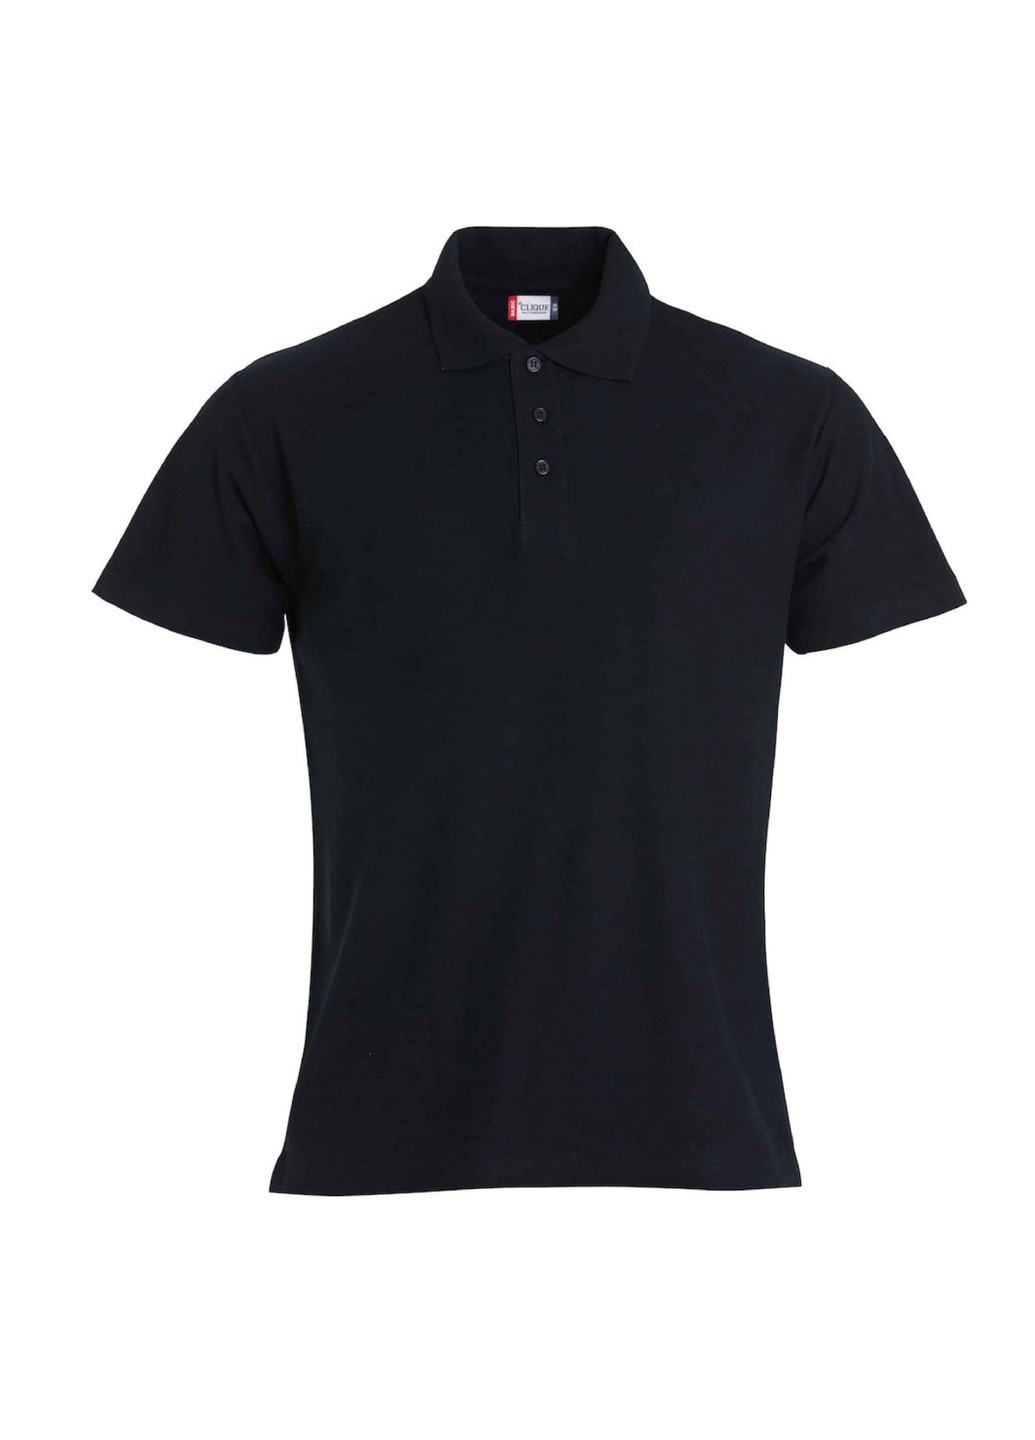 Черная футболка polo style gibson черного цвета Clique